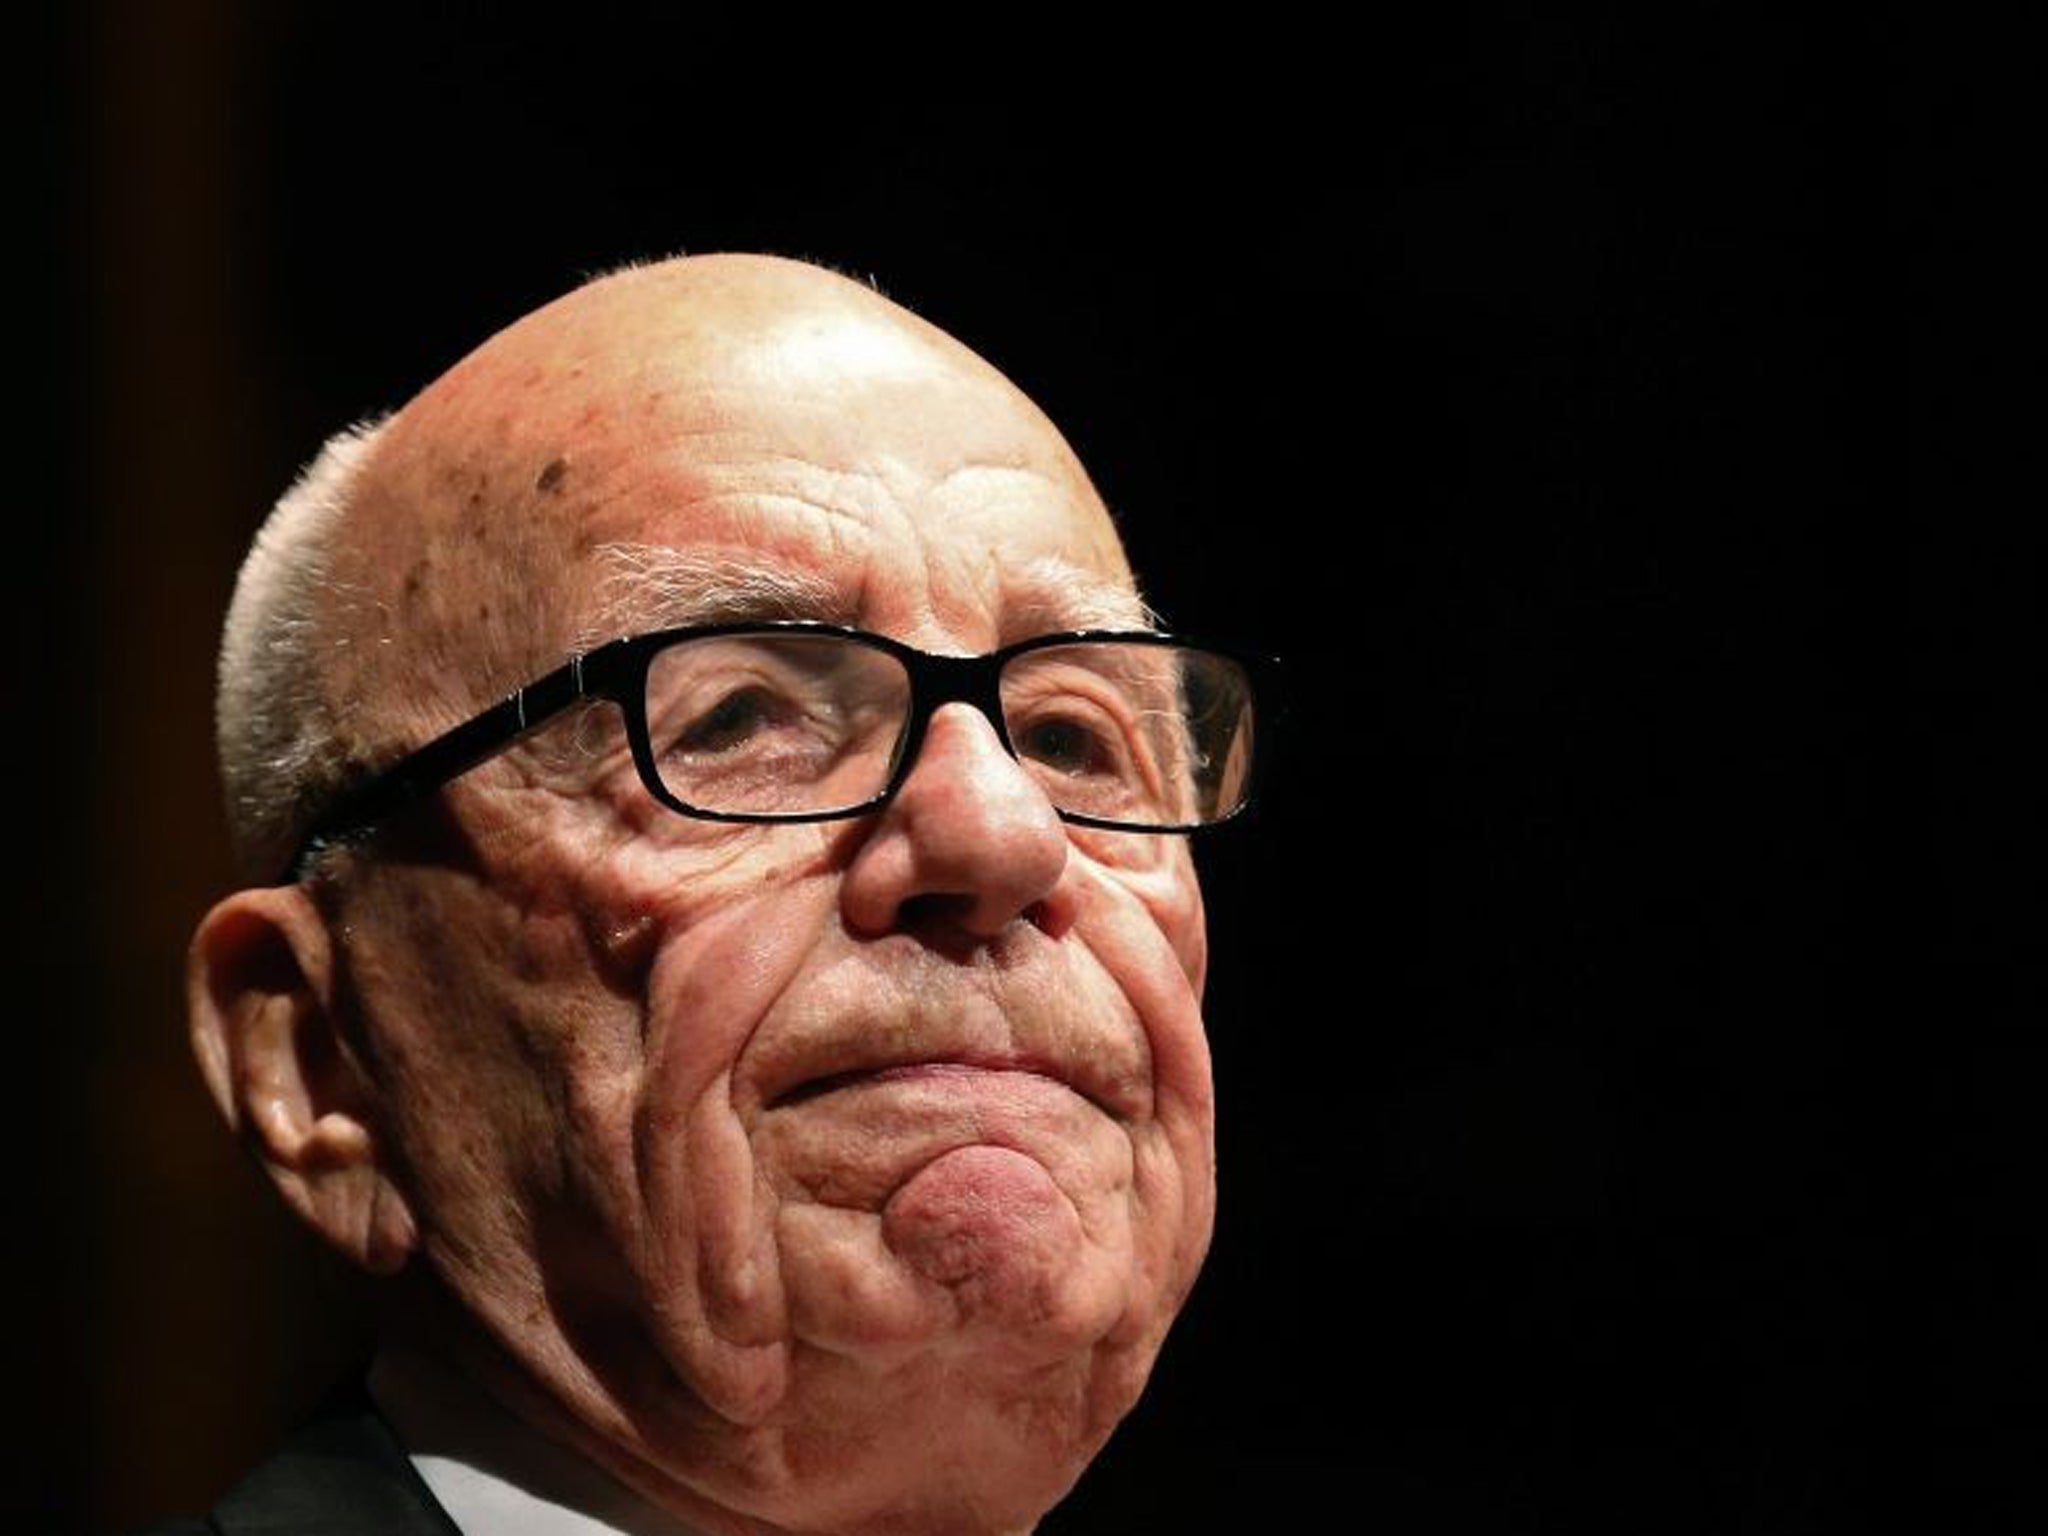 Media mogul Rupert Murdoch